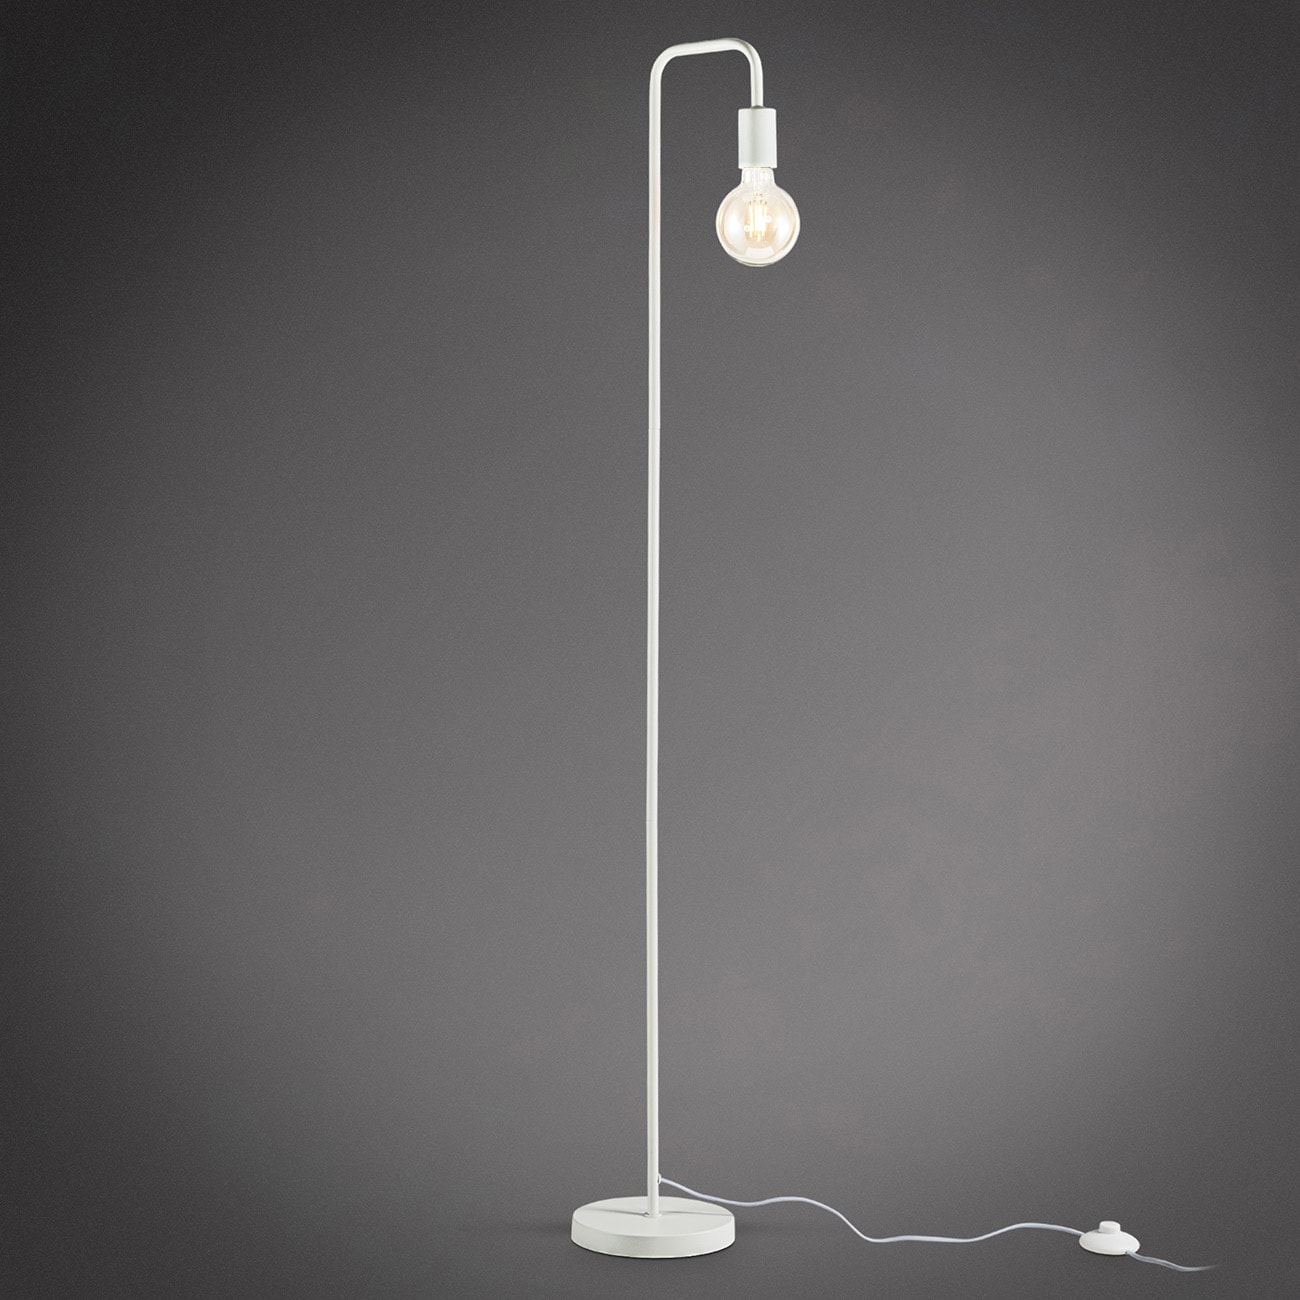 Metall Stehlampe im Retro Design weiß E27 - 1